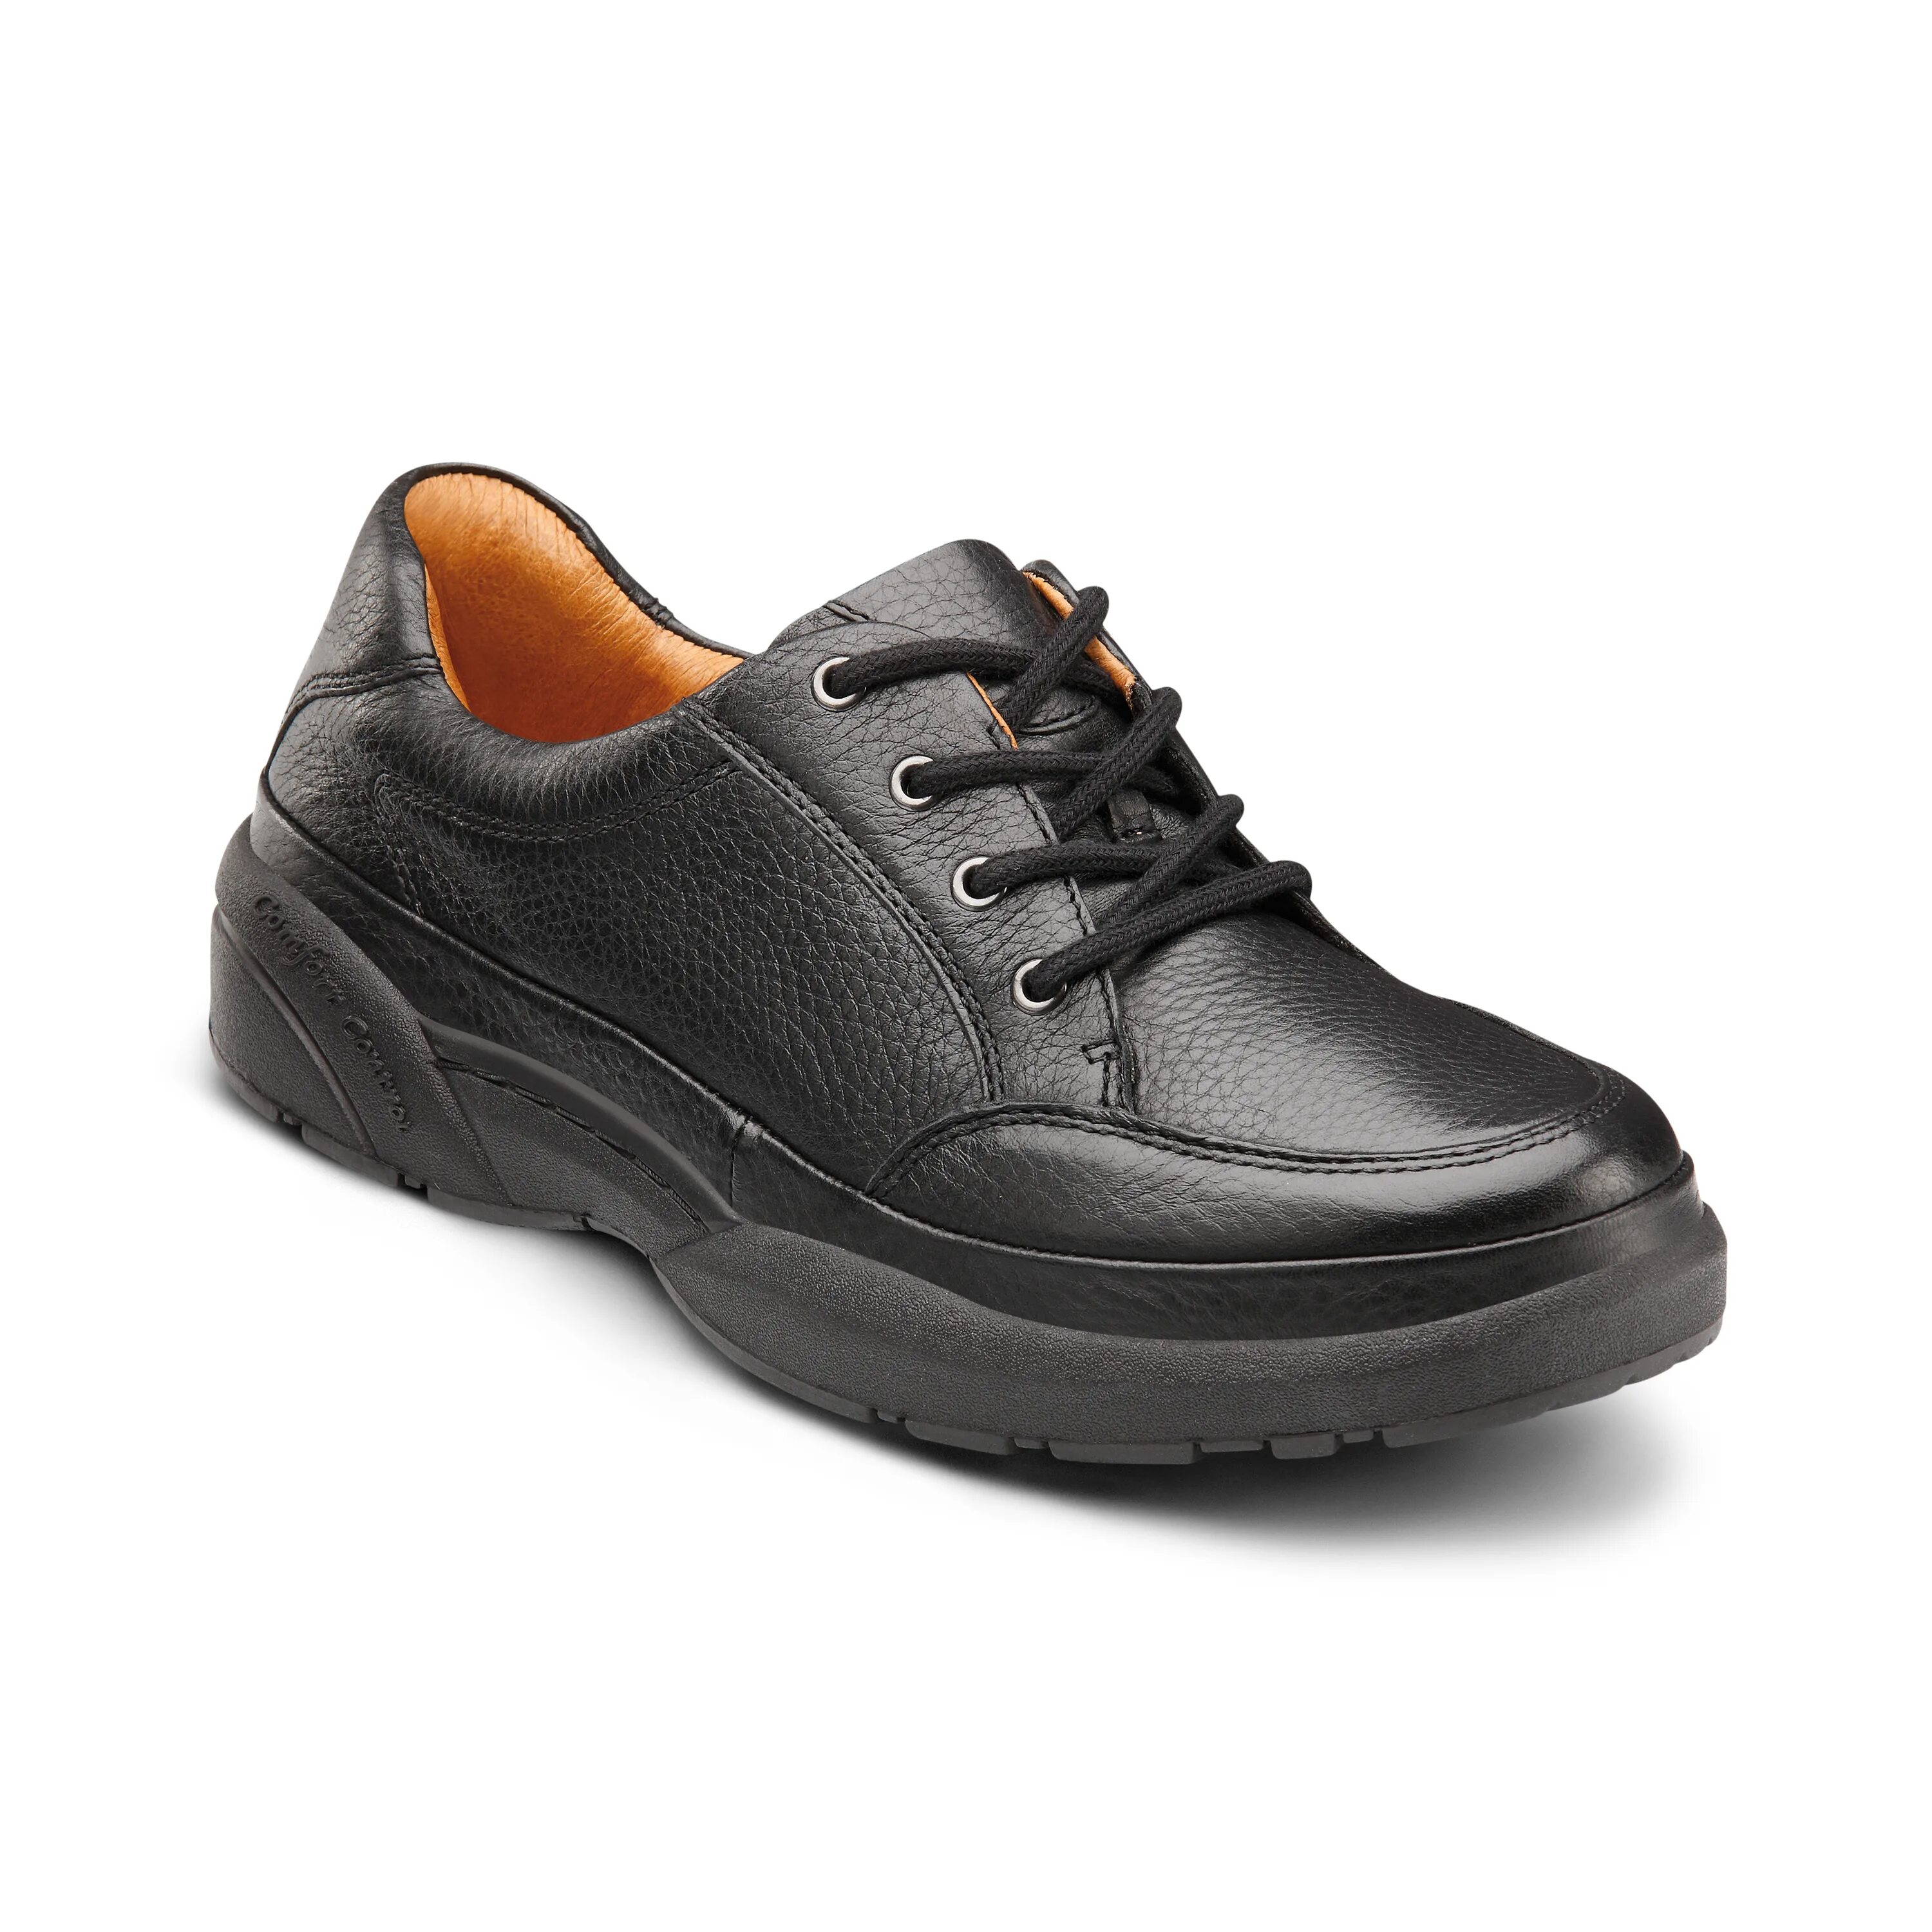 Dr Comfort обувь. Кроссовки ортопедические Dr. Comfort. Ботинки Comfort sole. Обувь w22. Туфли комфорт